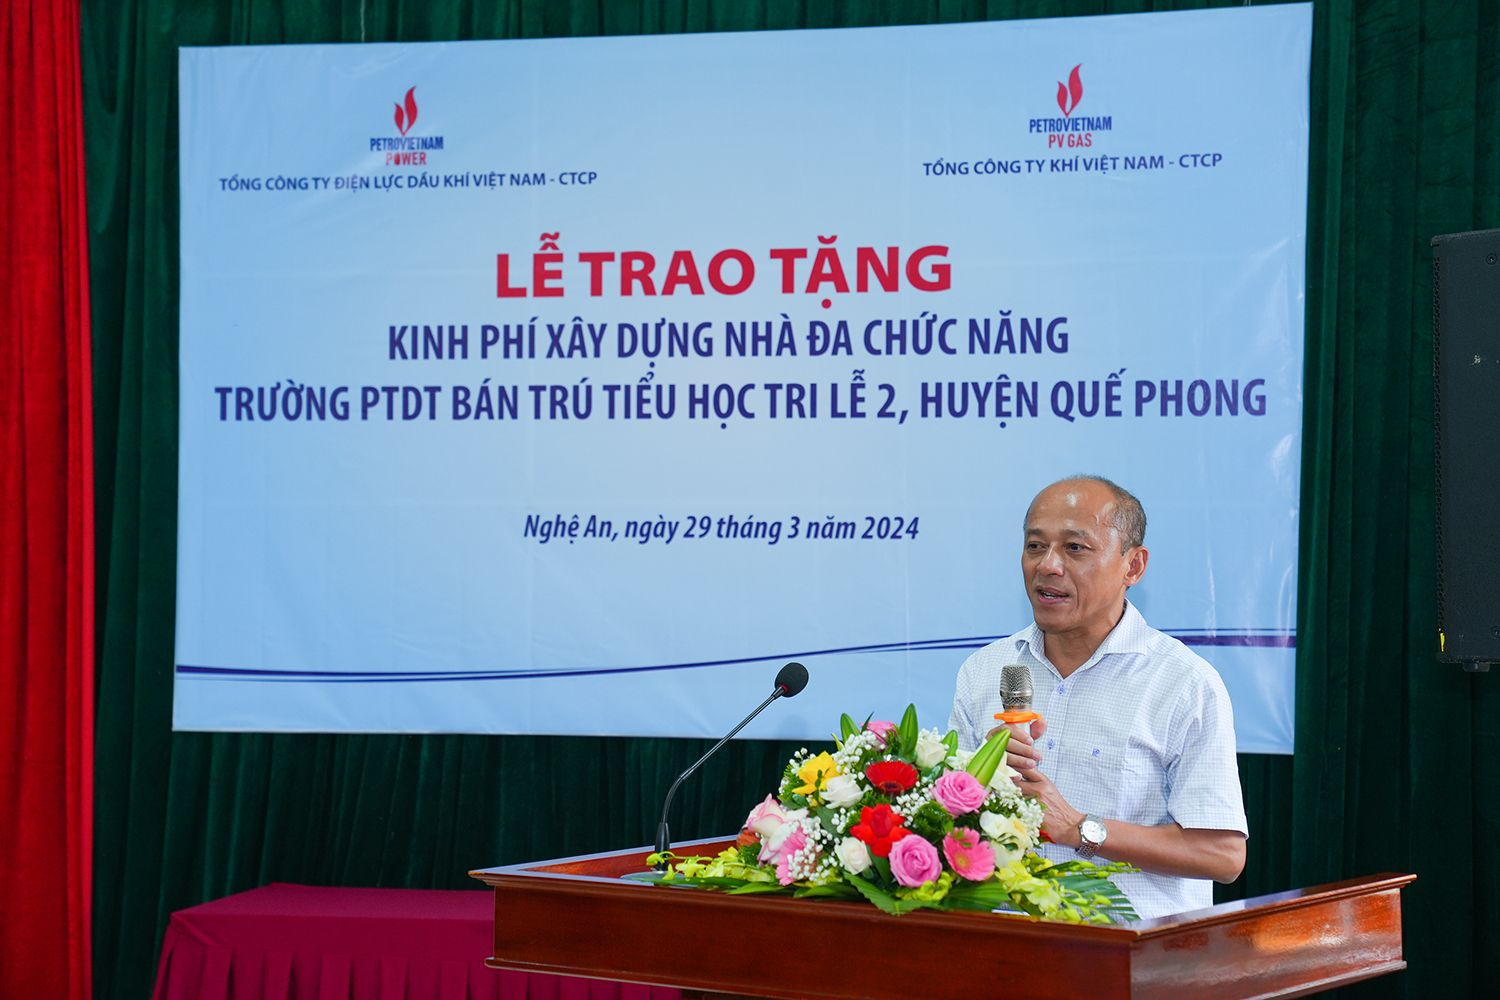 Ông Hoàng Xuân Thành, Chủ tịch HĐQT PV Power HHC báo cáo tại buổi làm việc